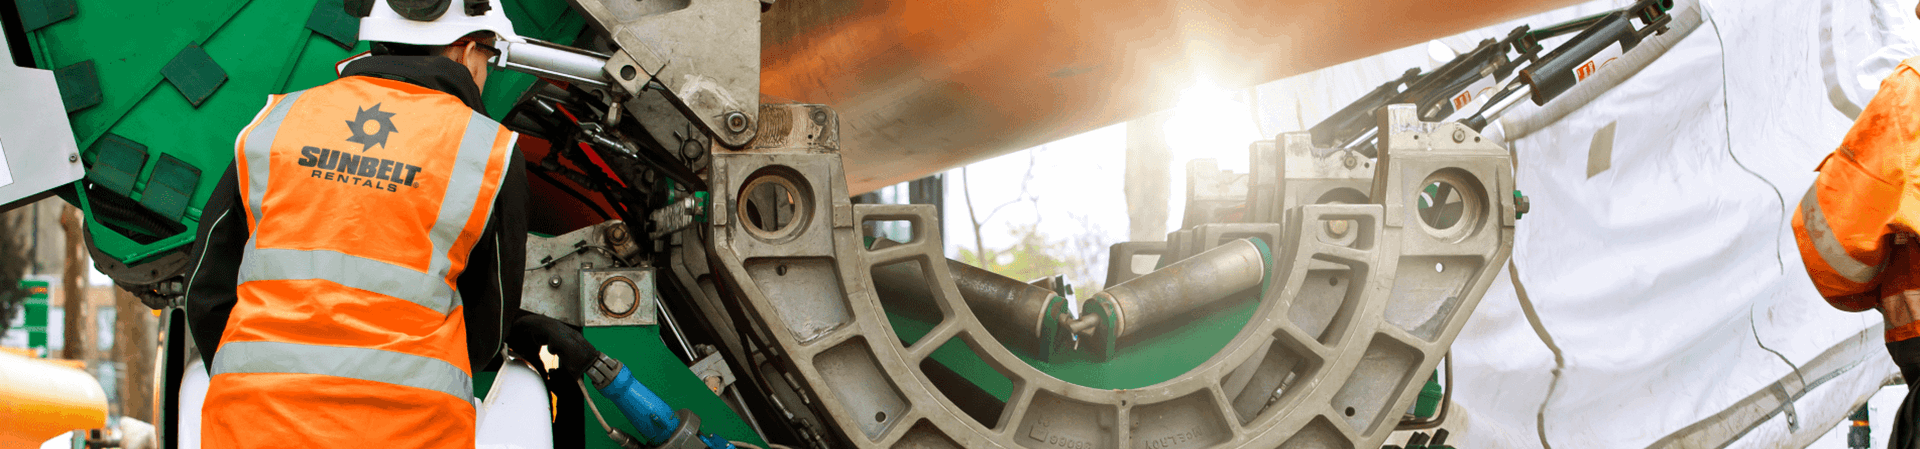 Sunbelt Rentals employee working on utilities pipes